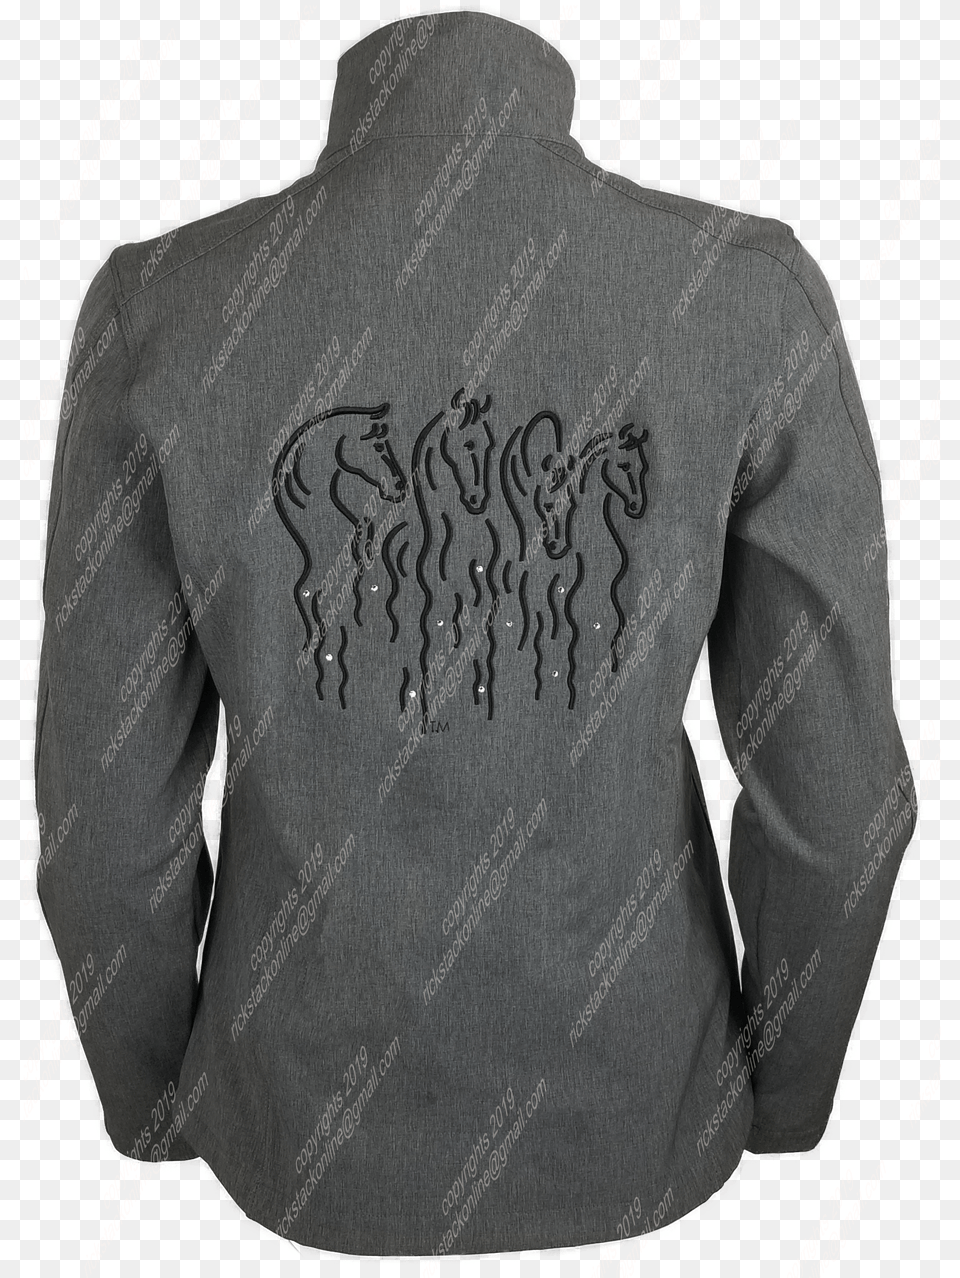 Confetti Horses Light Gray Jacket Black Stitching Sweatshirt, Blazer, Clothing, Coat Png Image